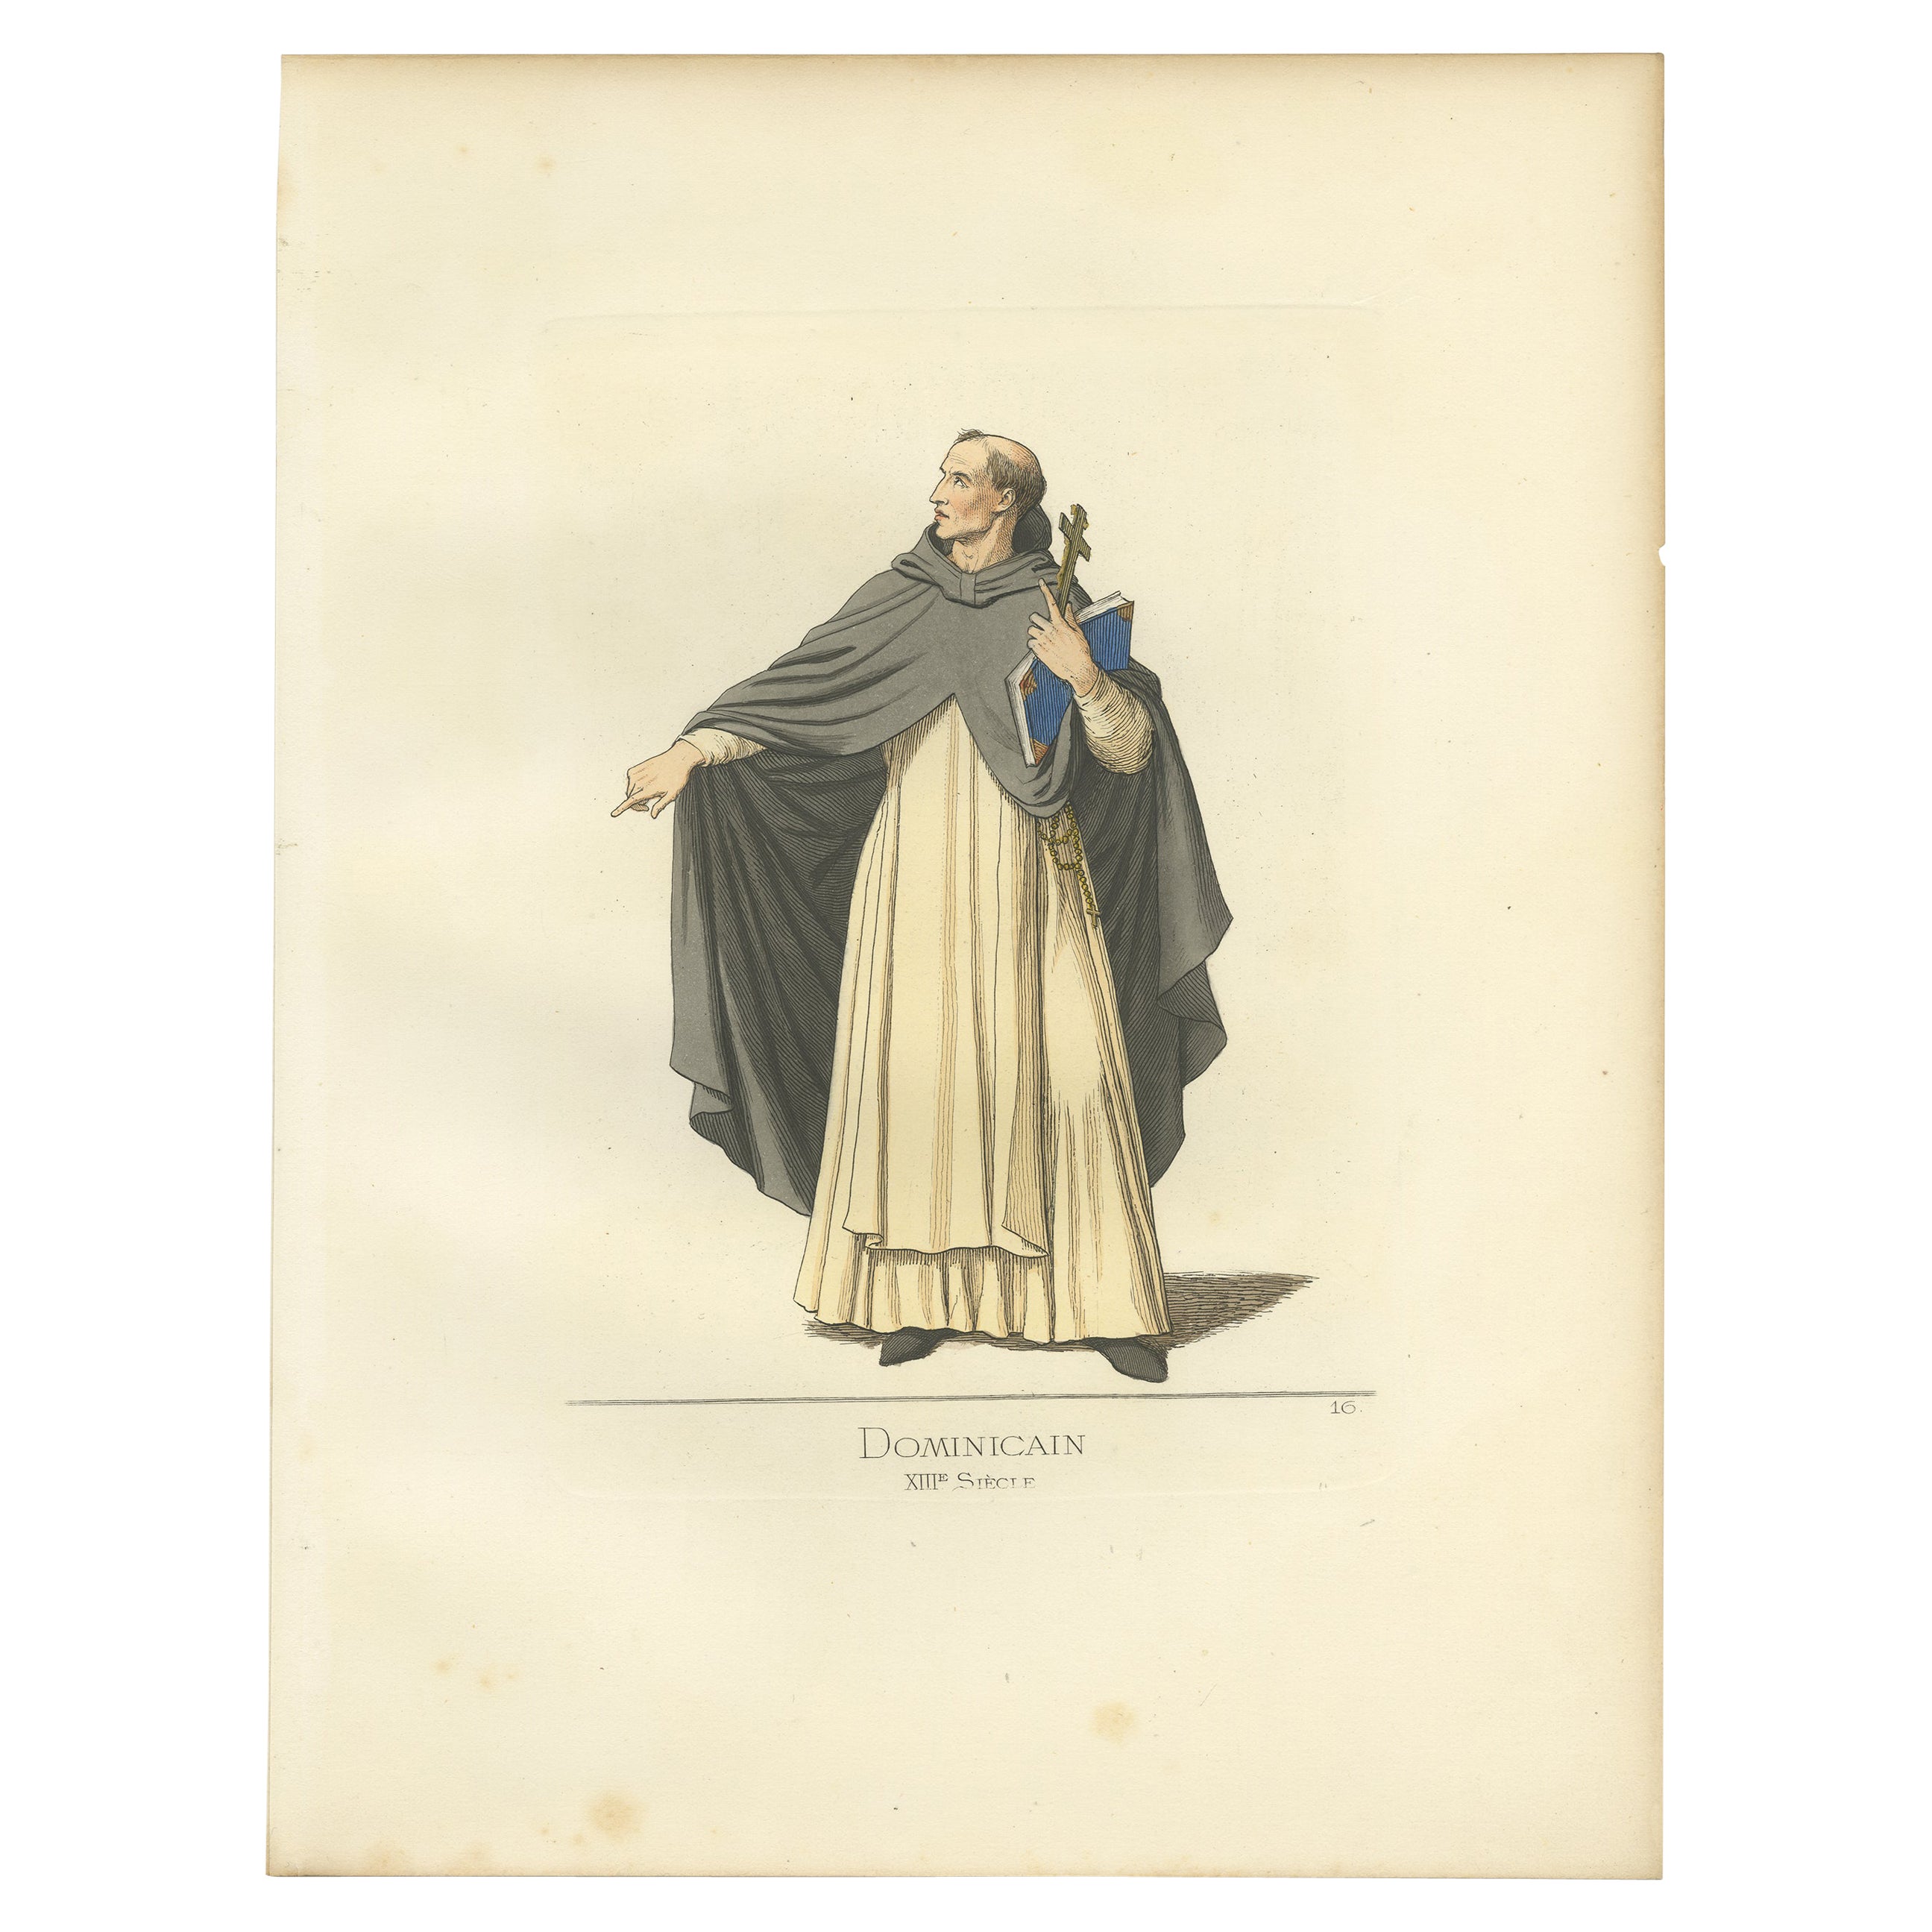 Impression ancienne d'un membre de l'Ordre dominicain par Bonnard, 1860